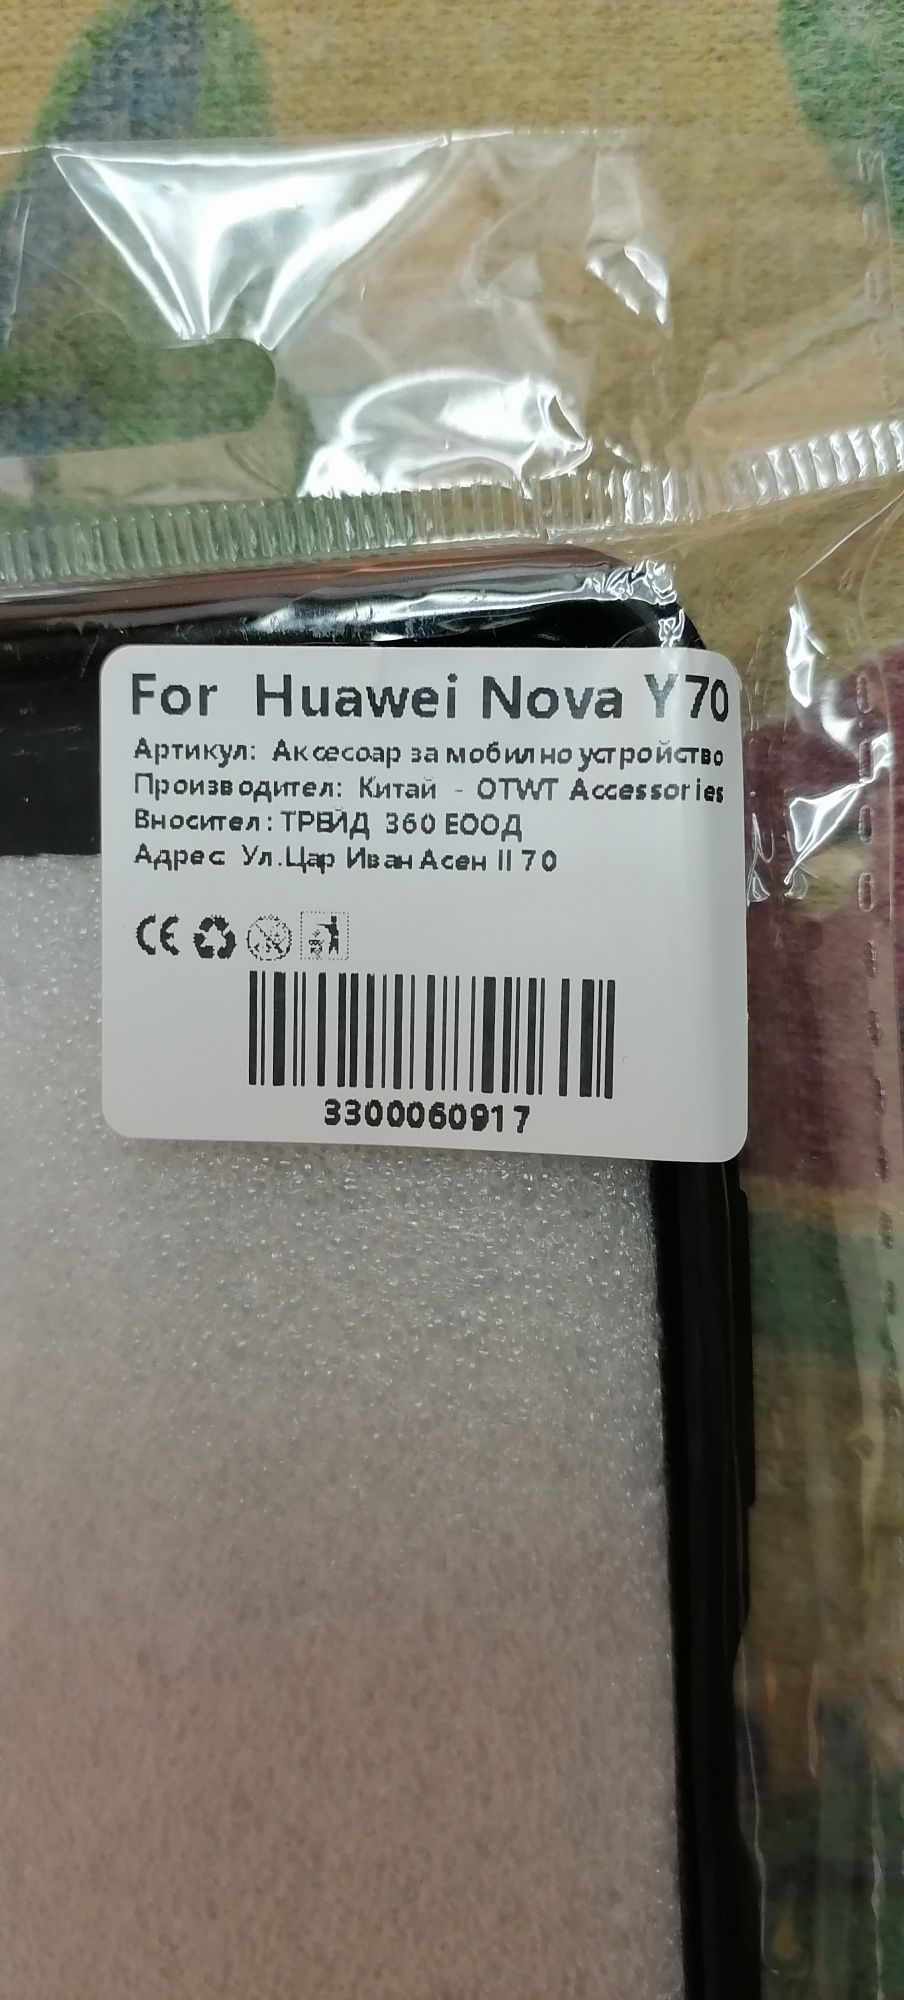 Противоударен кейс/протектор за смартфон Huawei Nova Y70